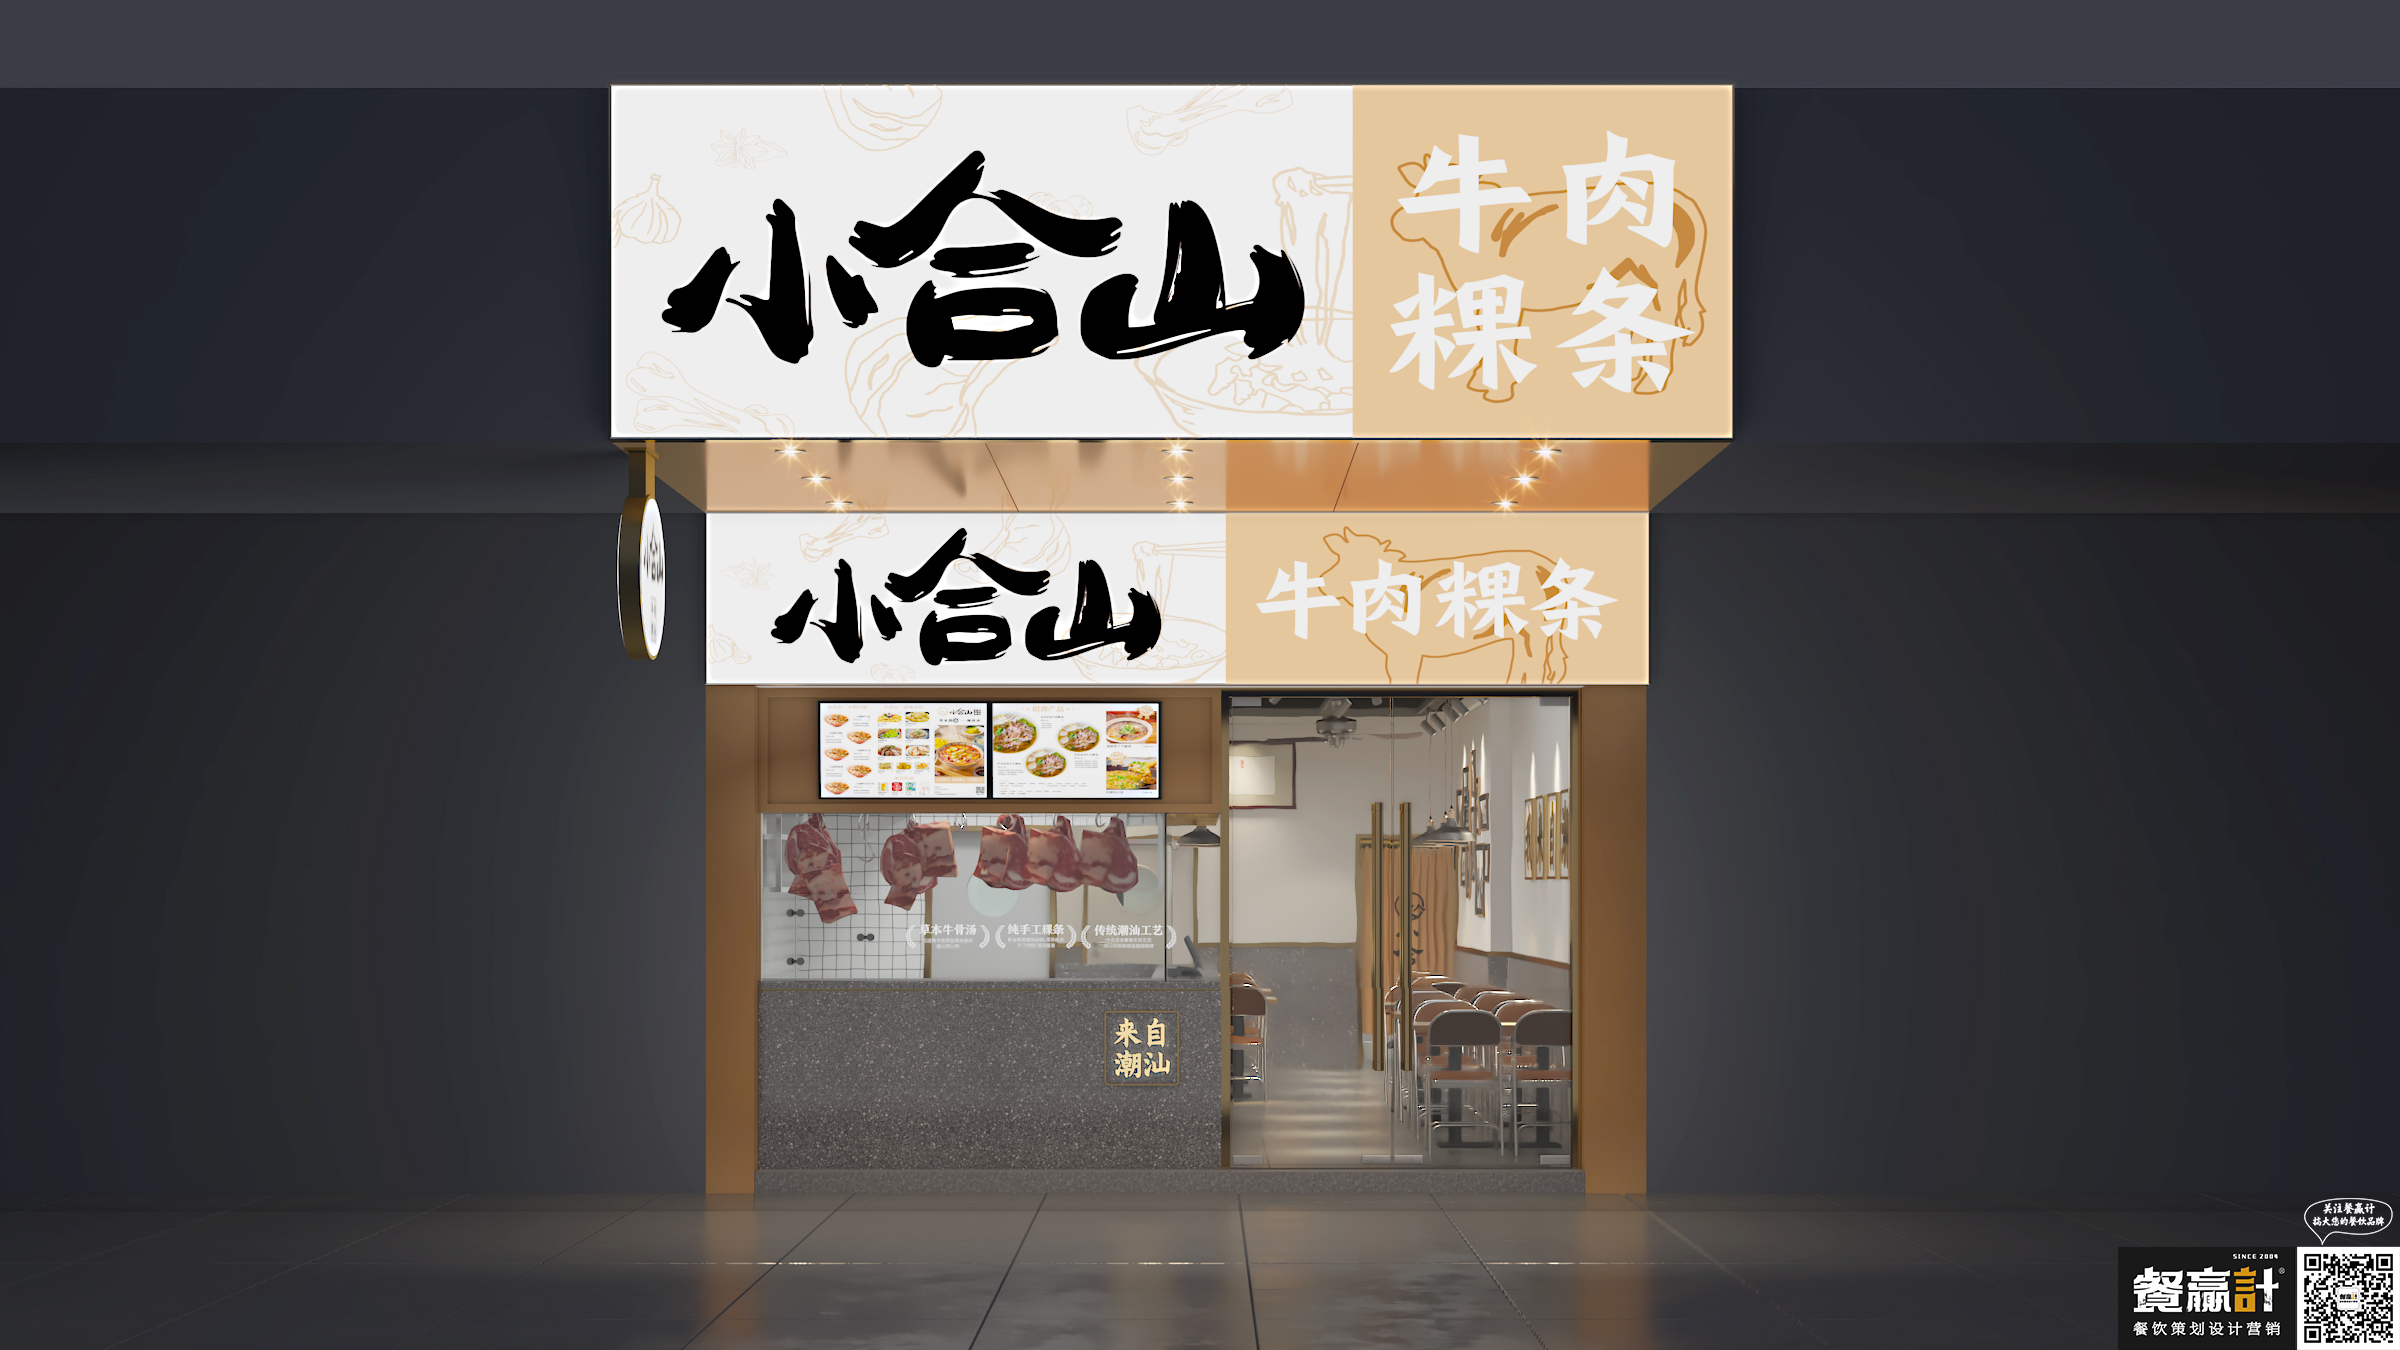 喜茶小合山——牛肉粿条餐厅空间设计